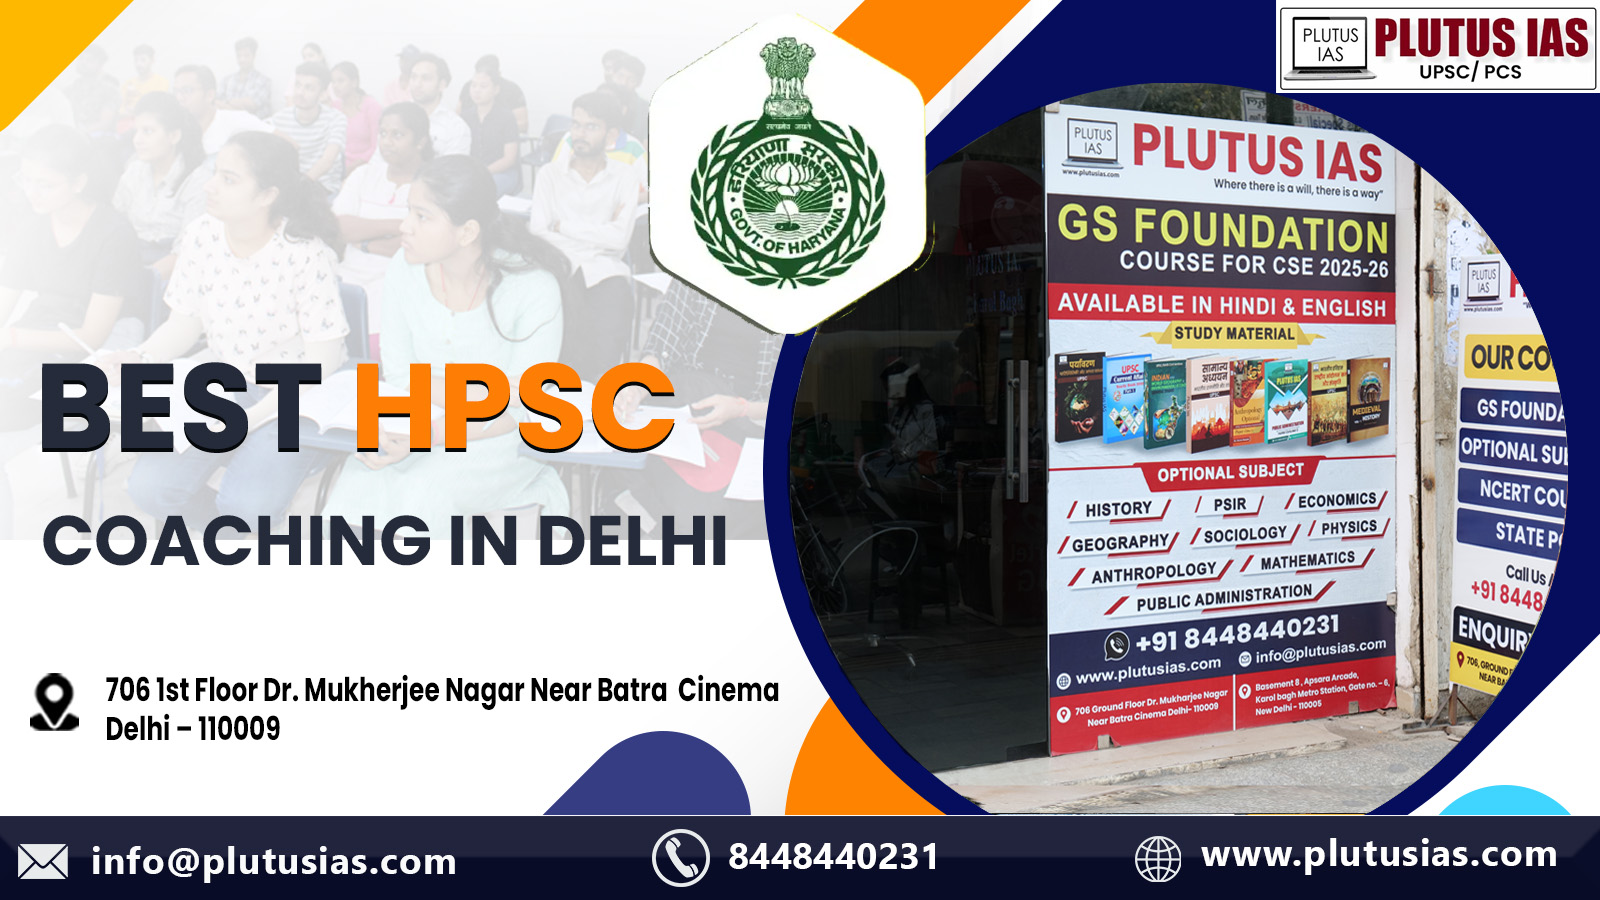 Plutus IAS Best HPSC Coaching in Delhi